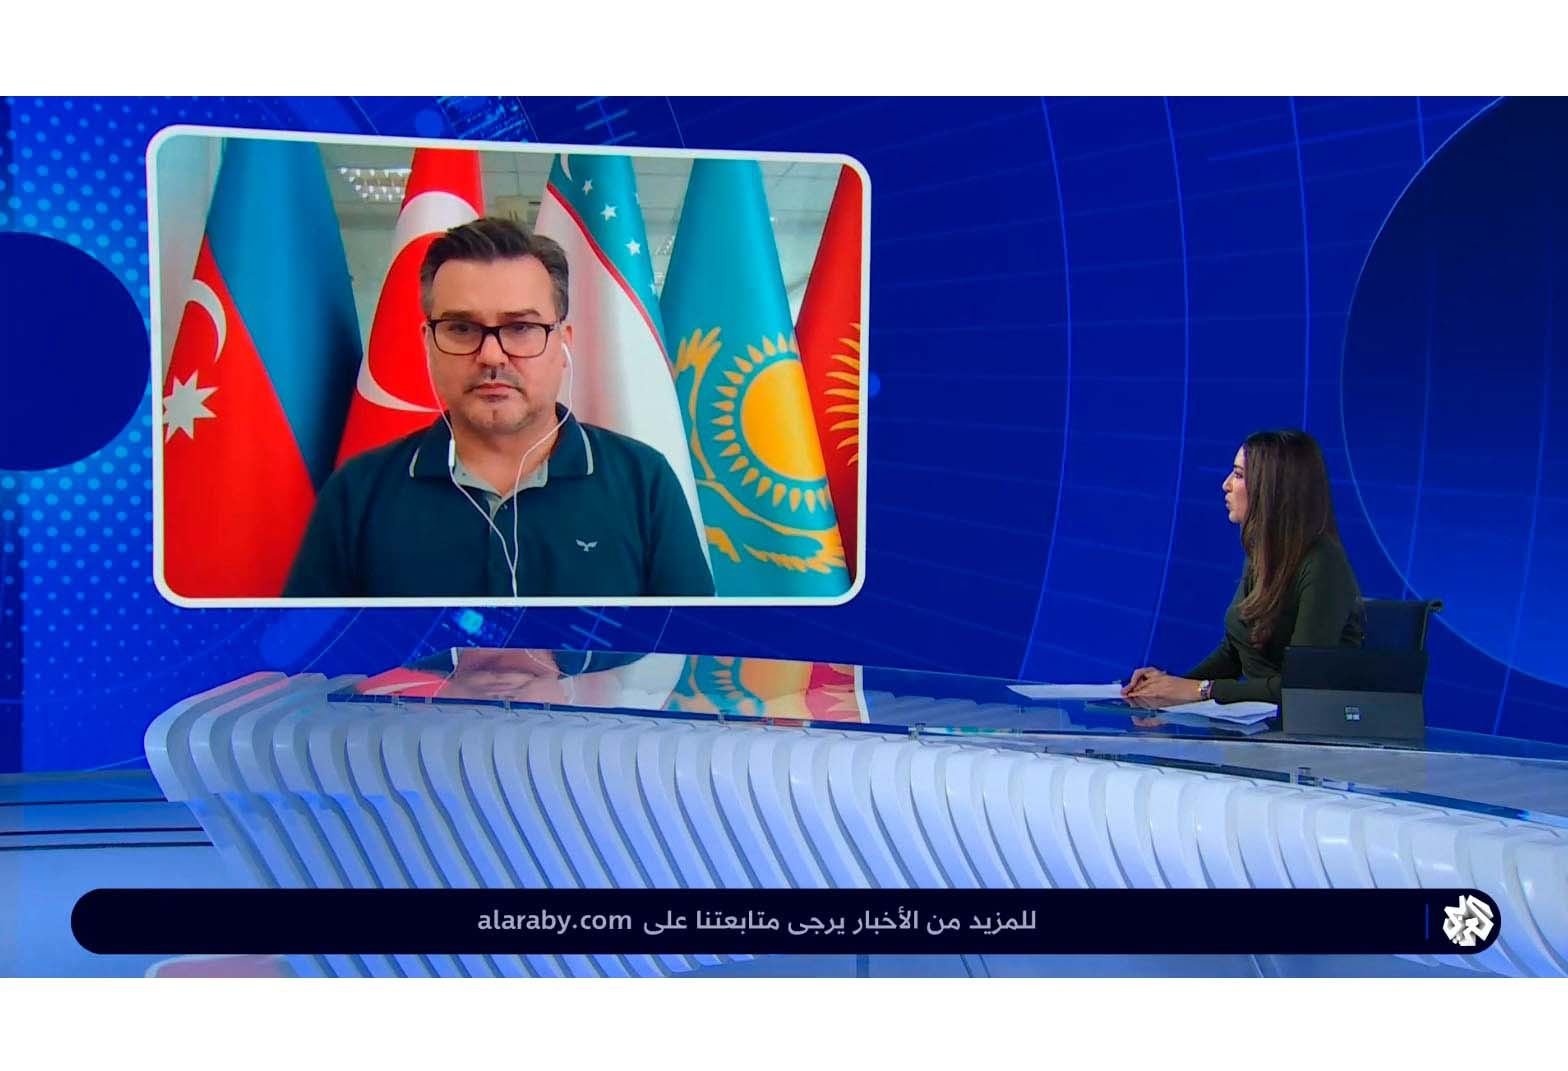 Для проживания армян в Карабахе нет никаких препятствий - Руфиз Хафизоглу в интервью телеканалу "ARABİ"